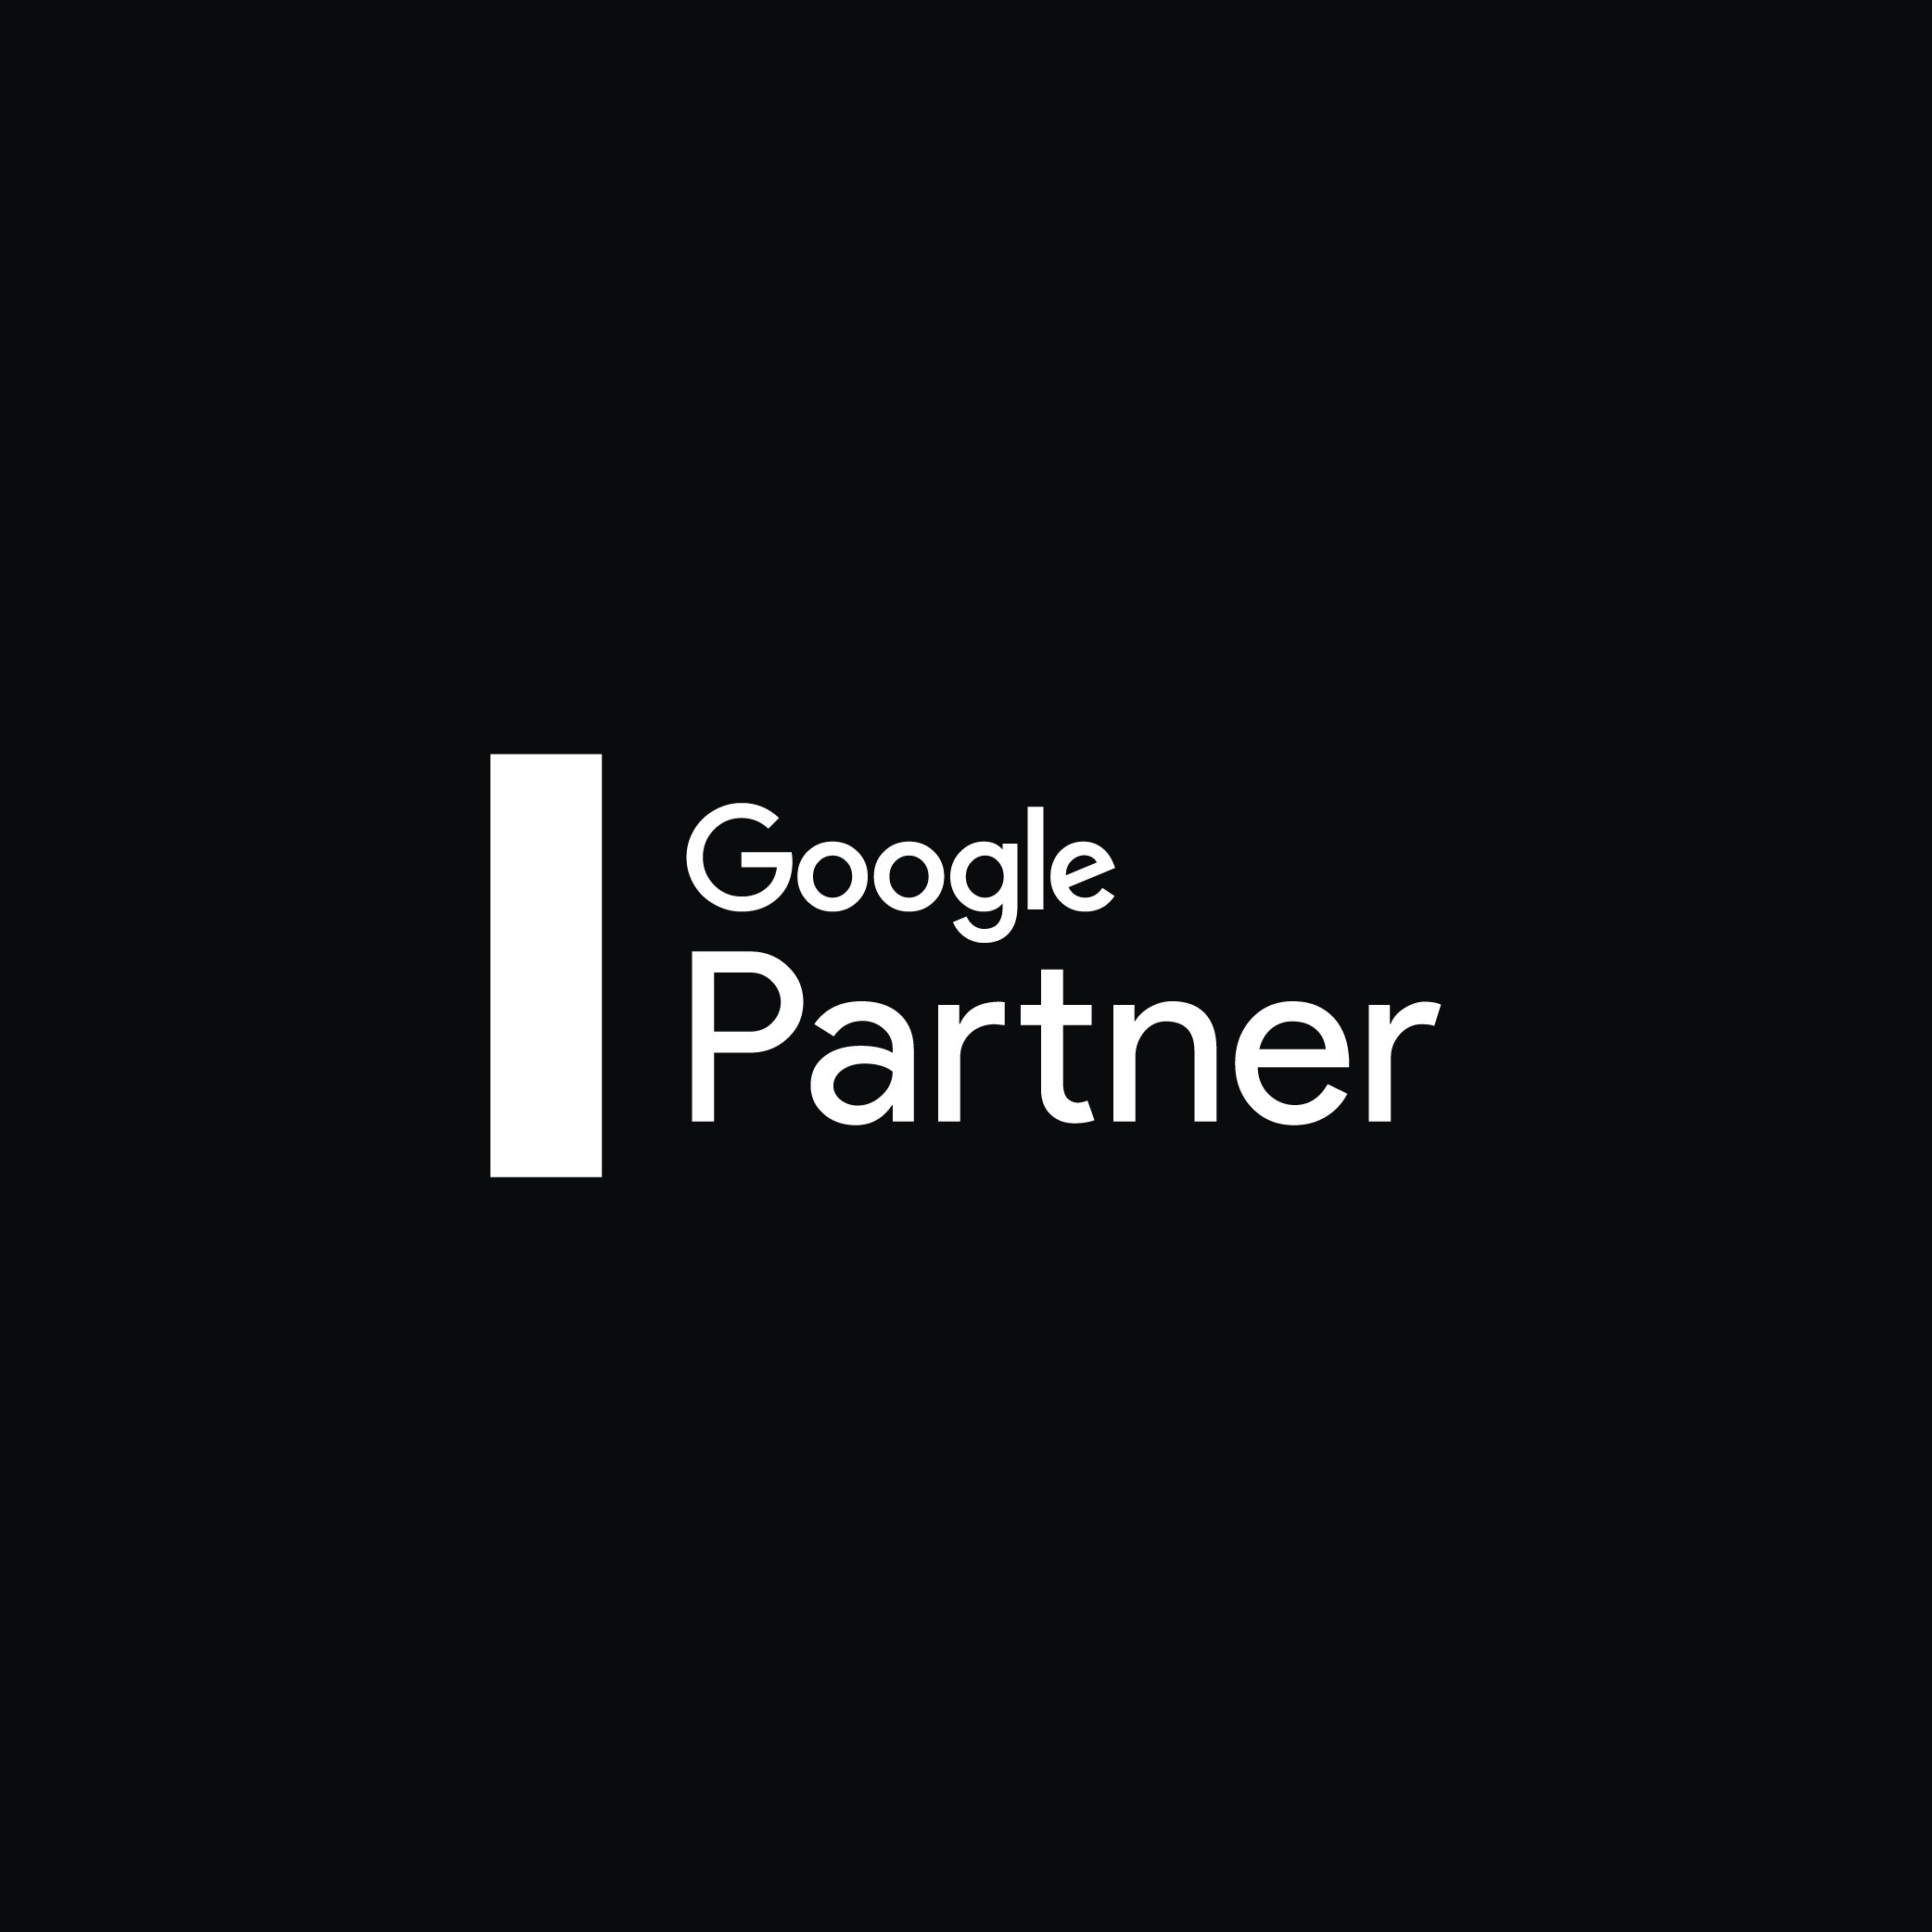 Google Partner | Reech